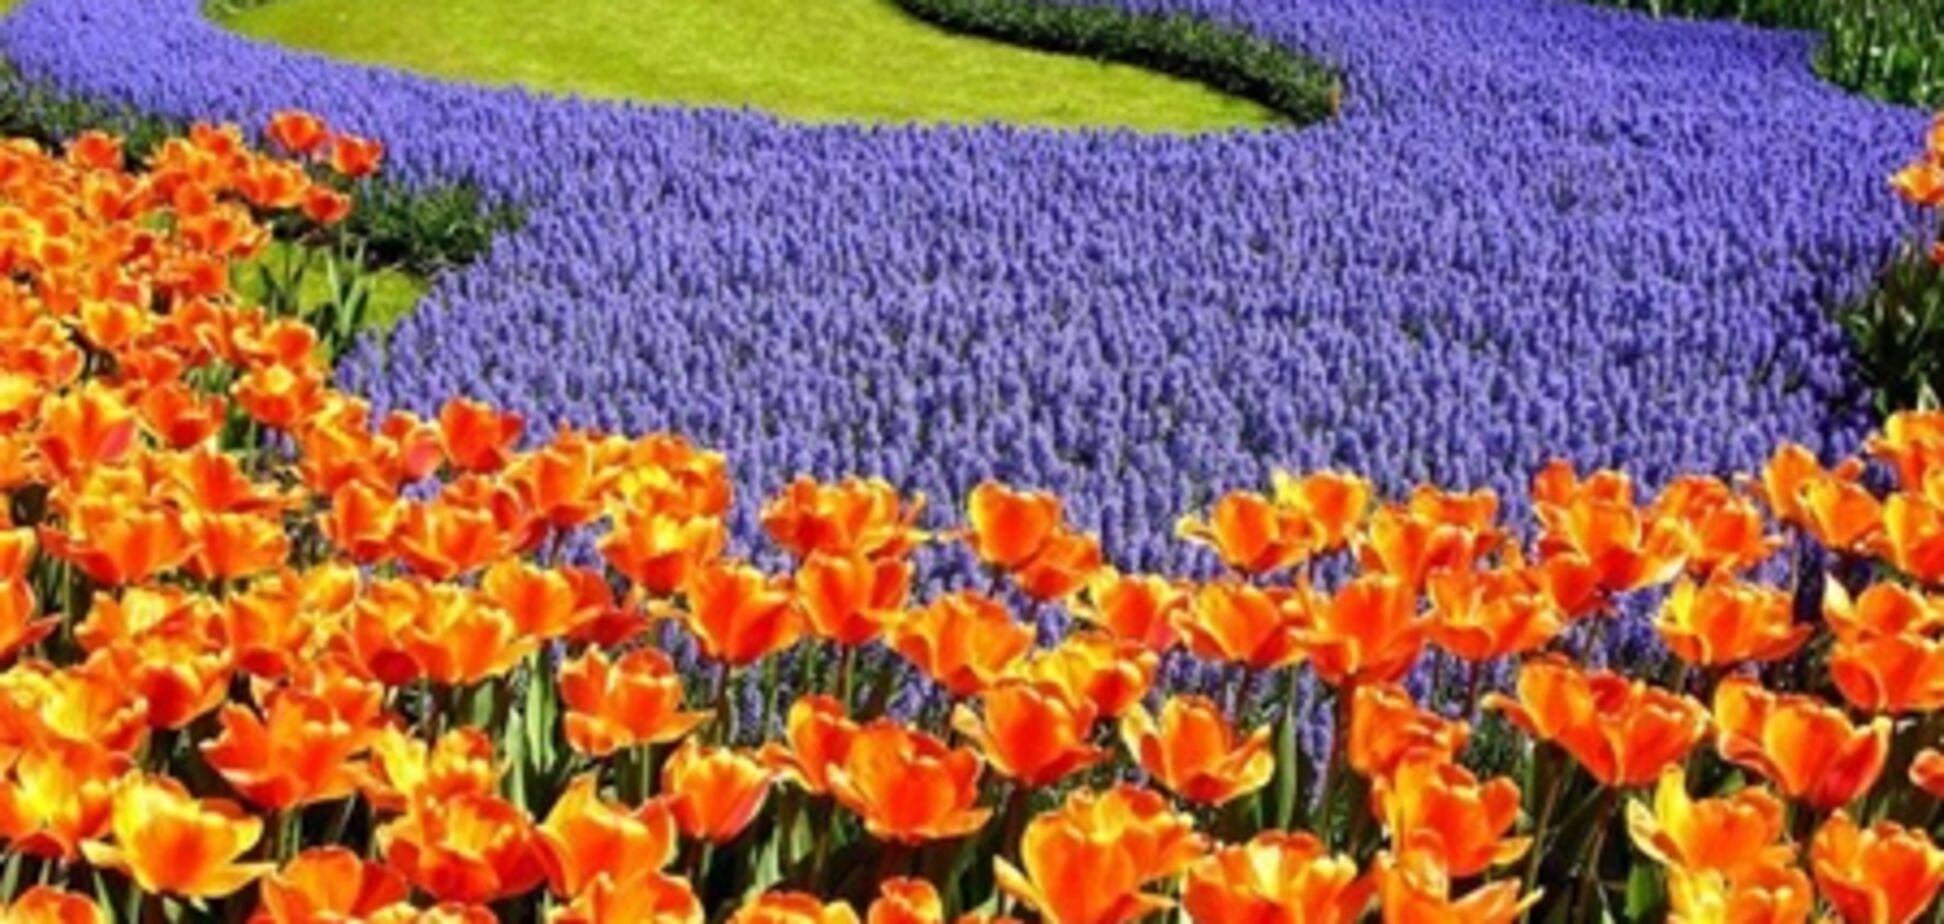 28 апреля в Киеве открывается выставка тюльпанов